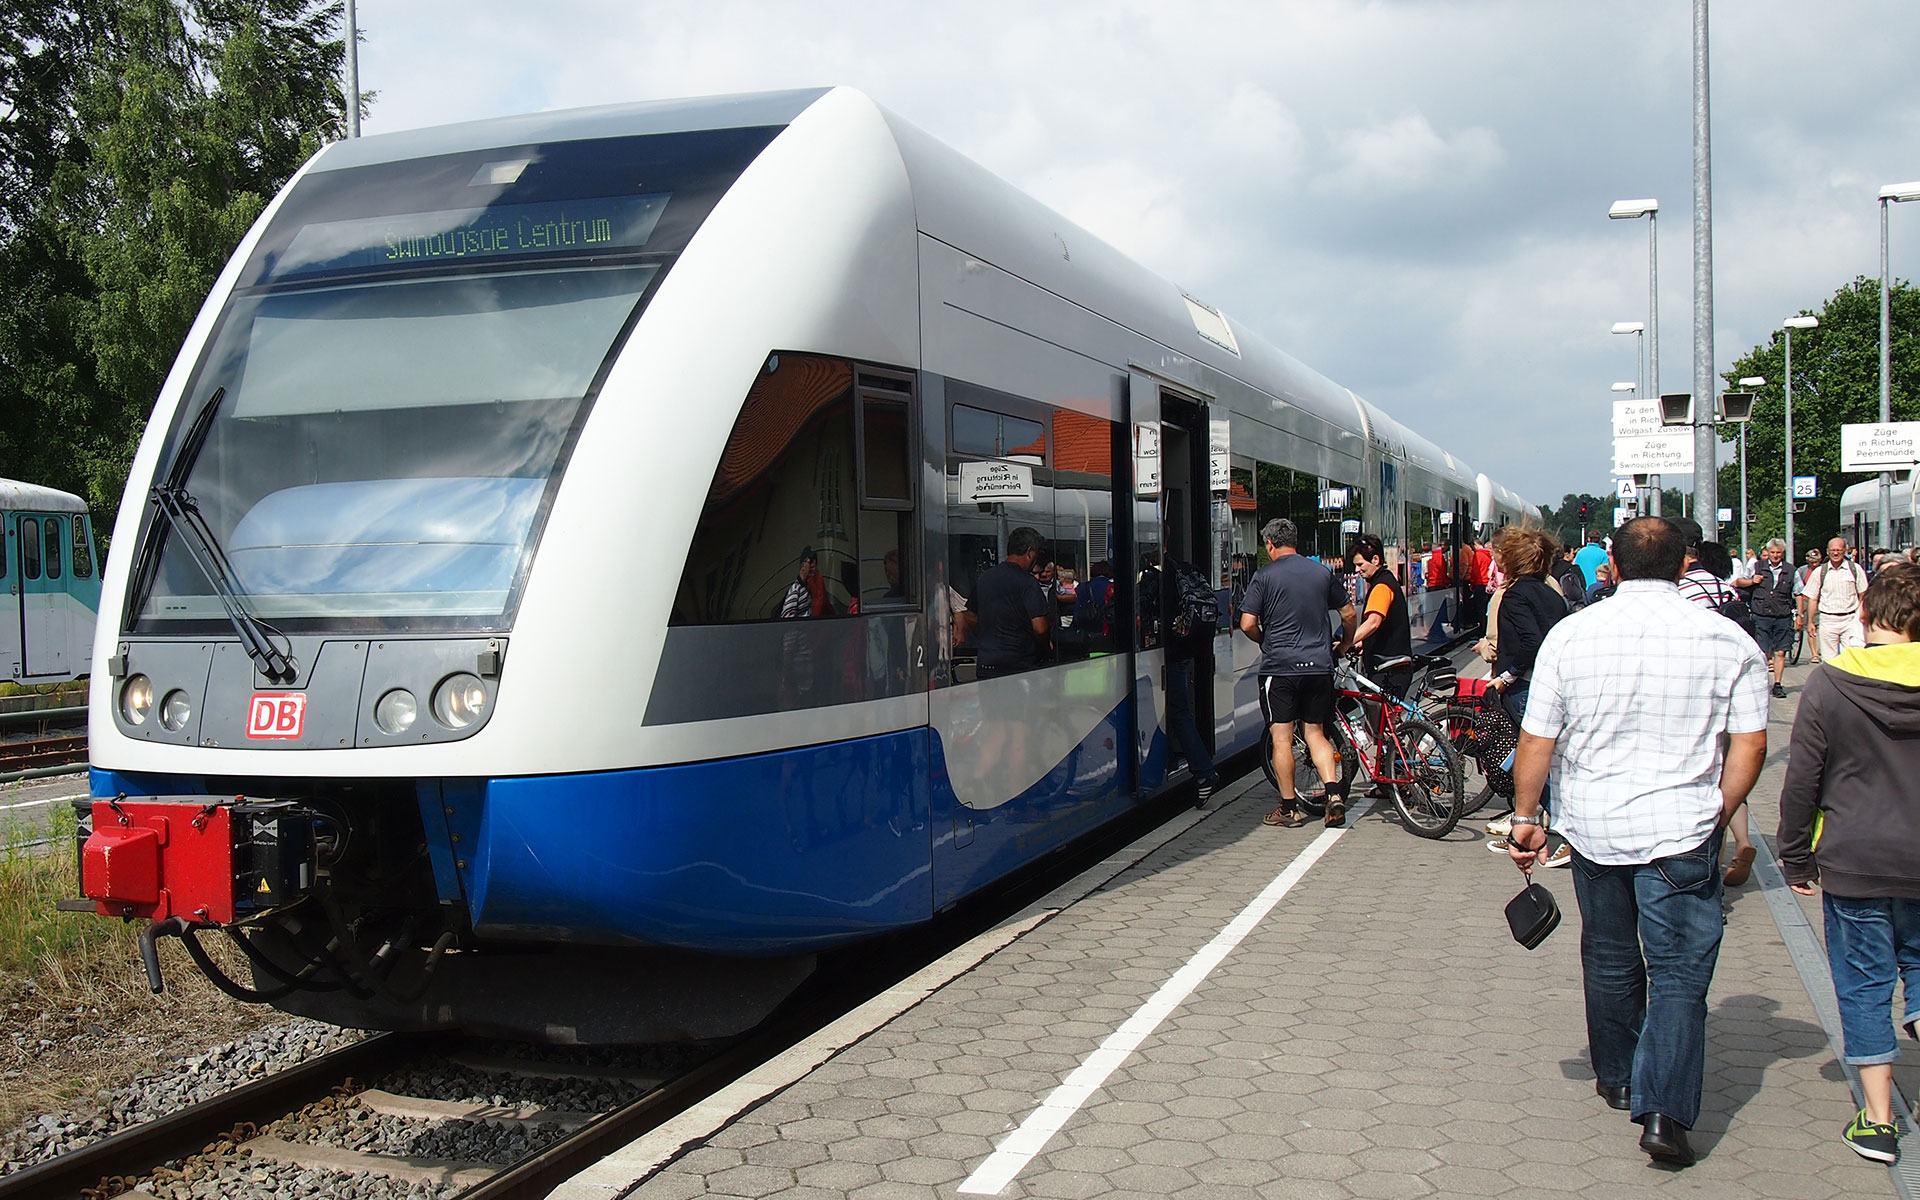 An UBB train bound for Świnoujście Centrum, seen here in high season (photo © hidden europe).